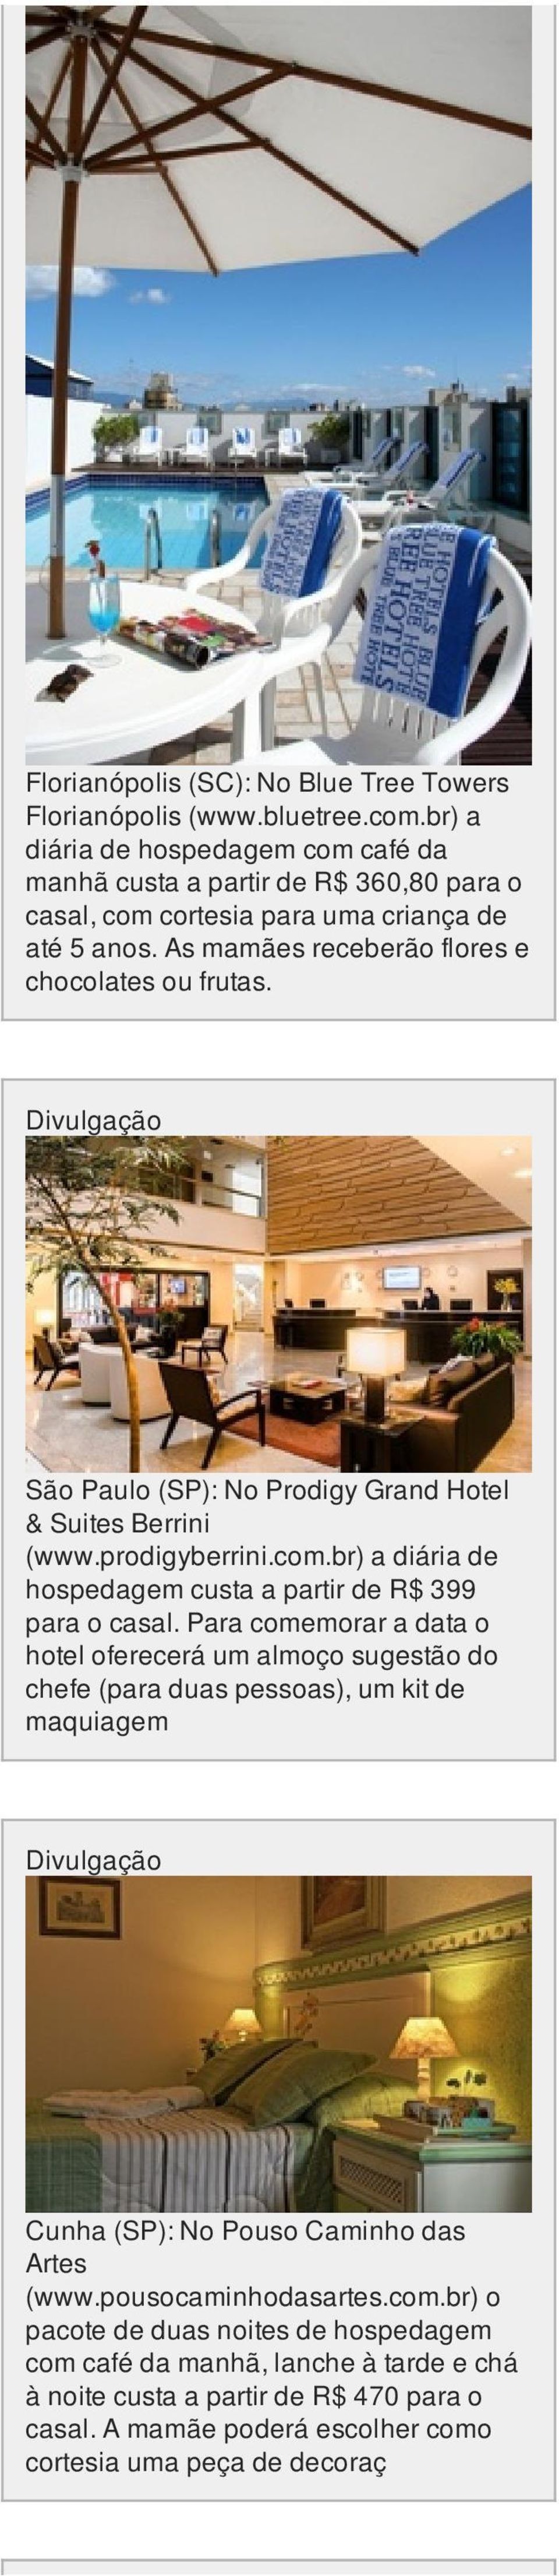 São Paulo (SP): No Prodigy Grand Hotel & Suites Berrini (www.prodigyberrini.com.br) a diária de hospedagem custa a partir de R$ 399 para o casal.